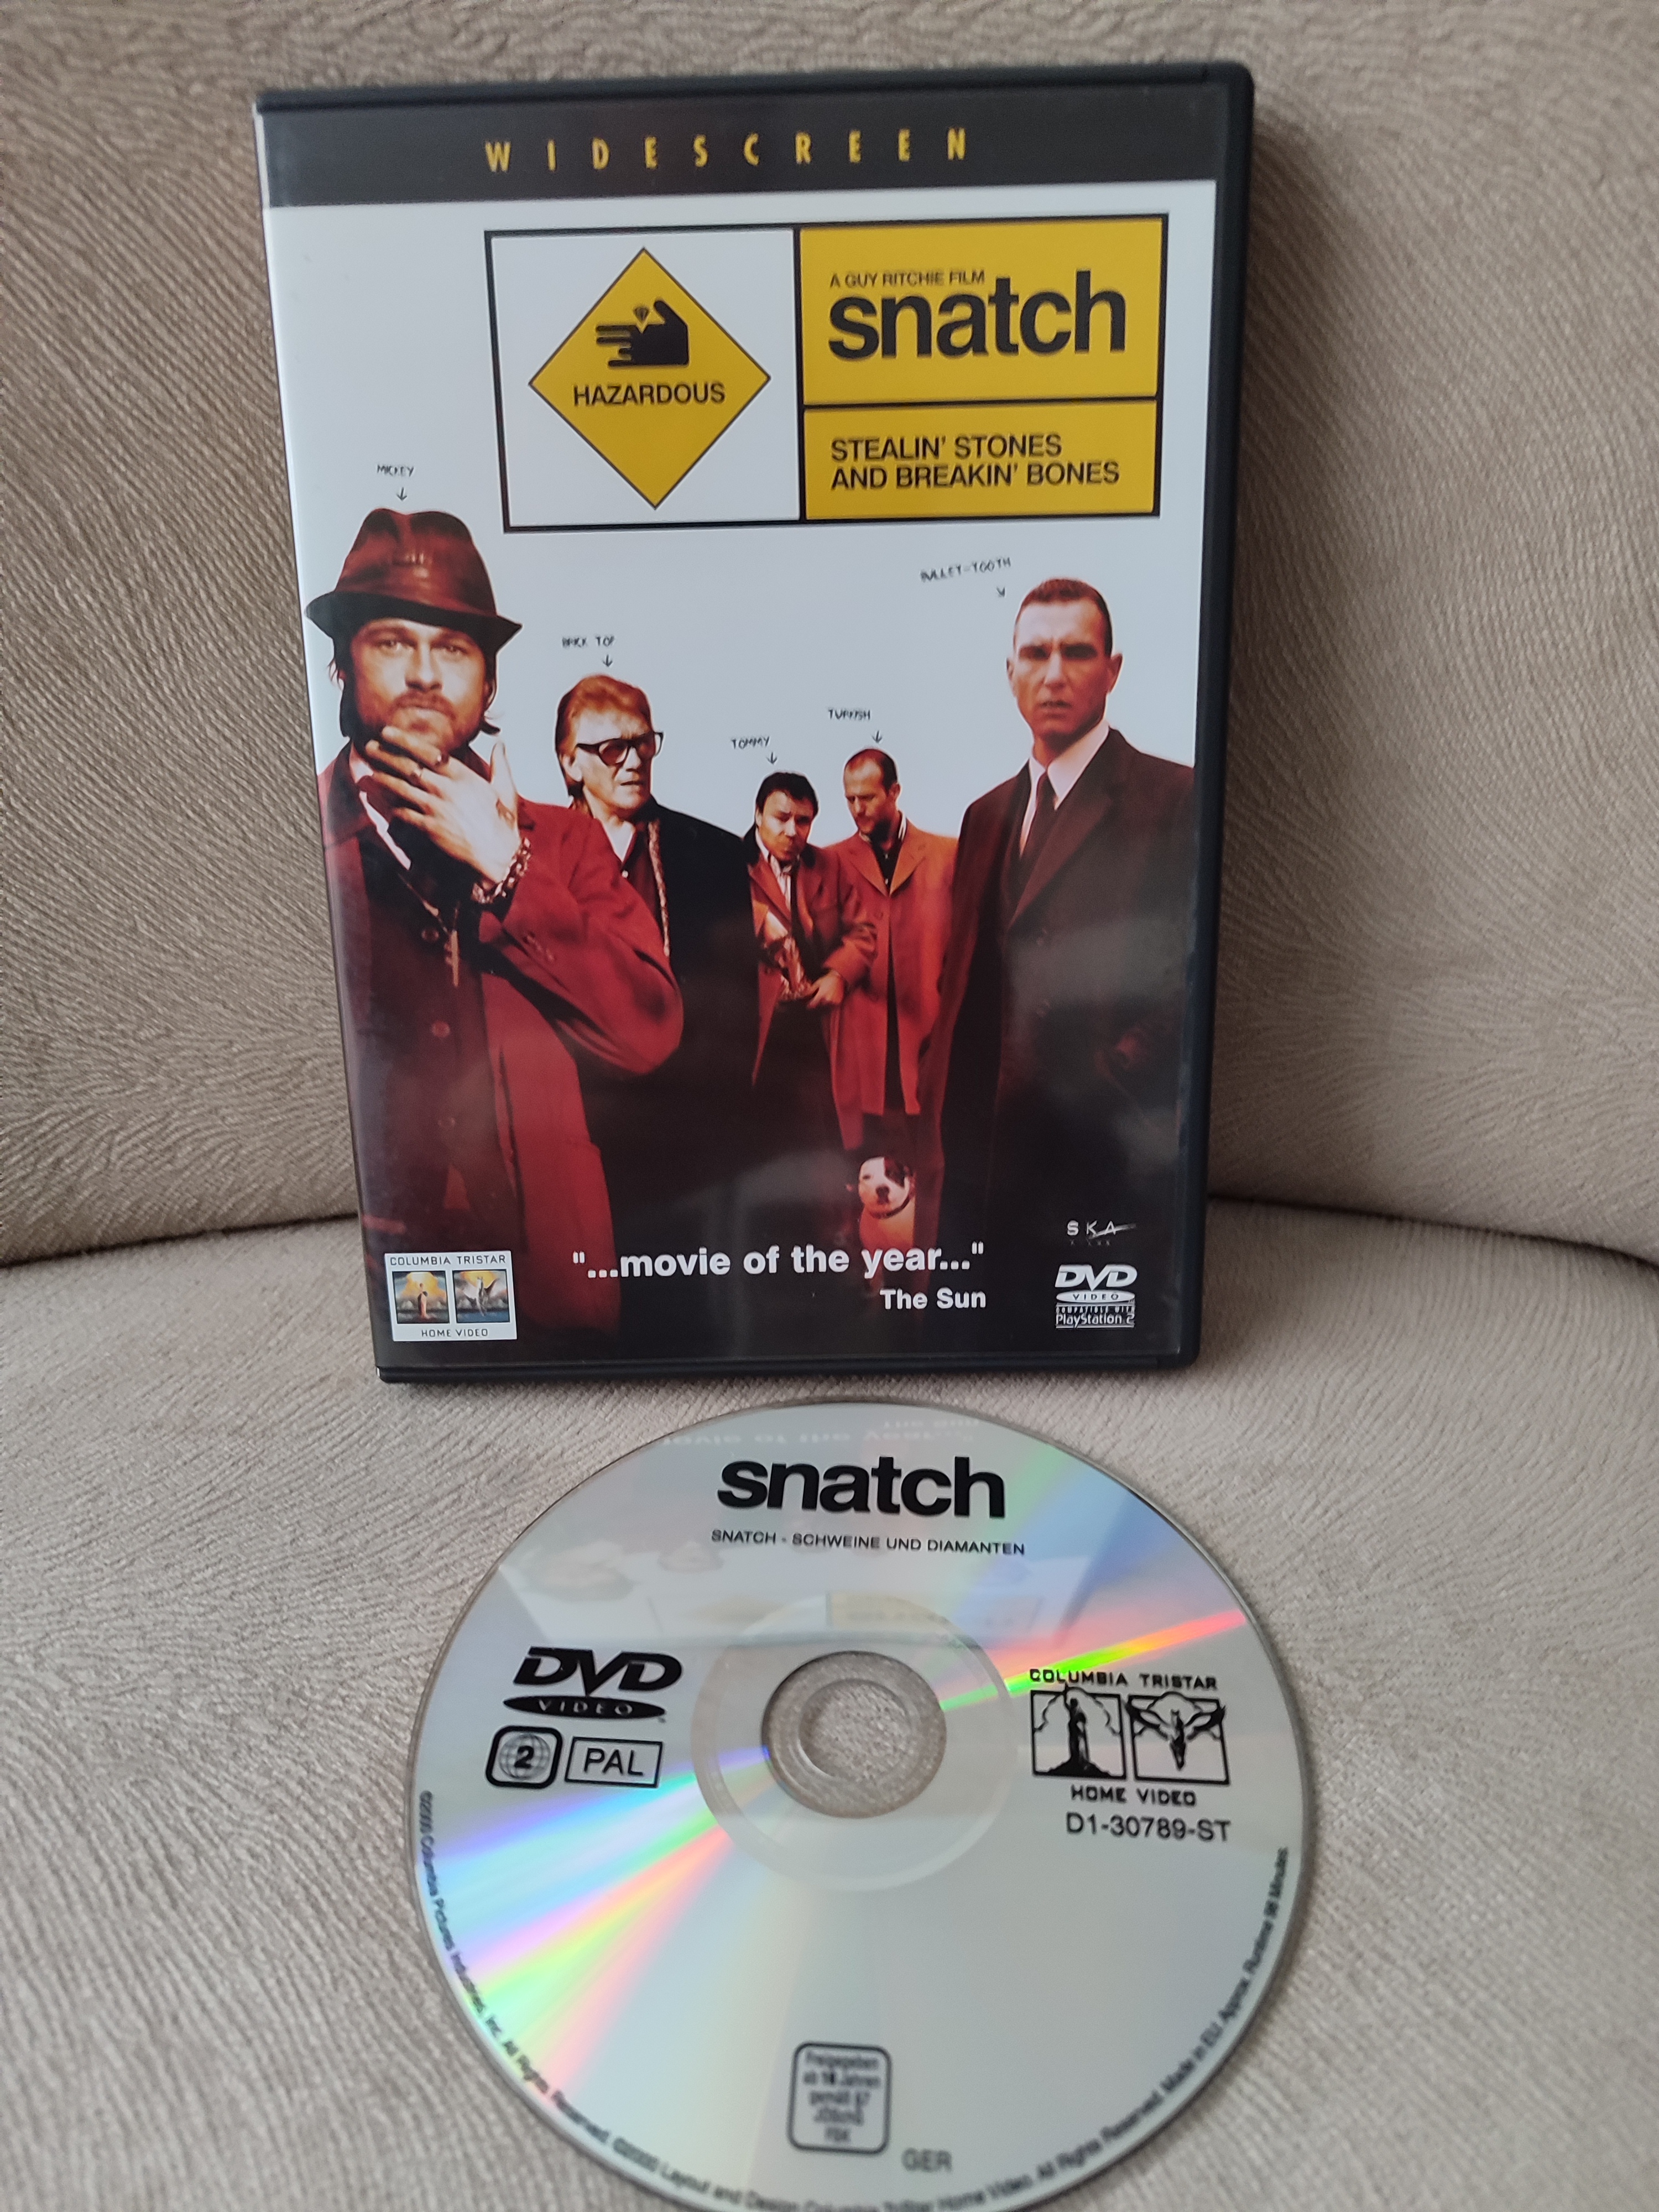 SNATCH - Guy Ritchie - DVD Film / Yabancı Basım Türkçe Altyazı Vardır 2. EL